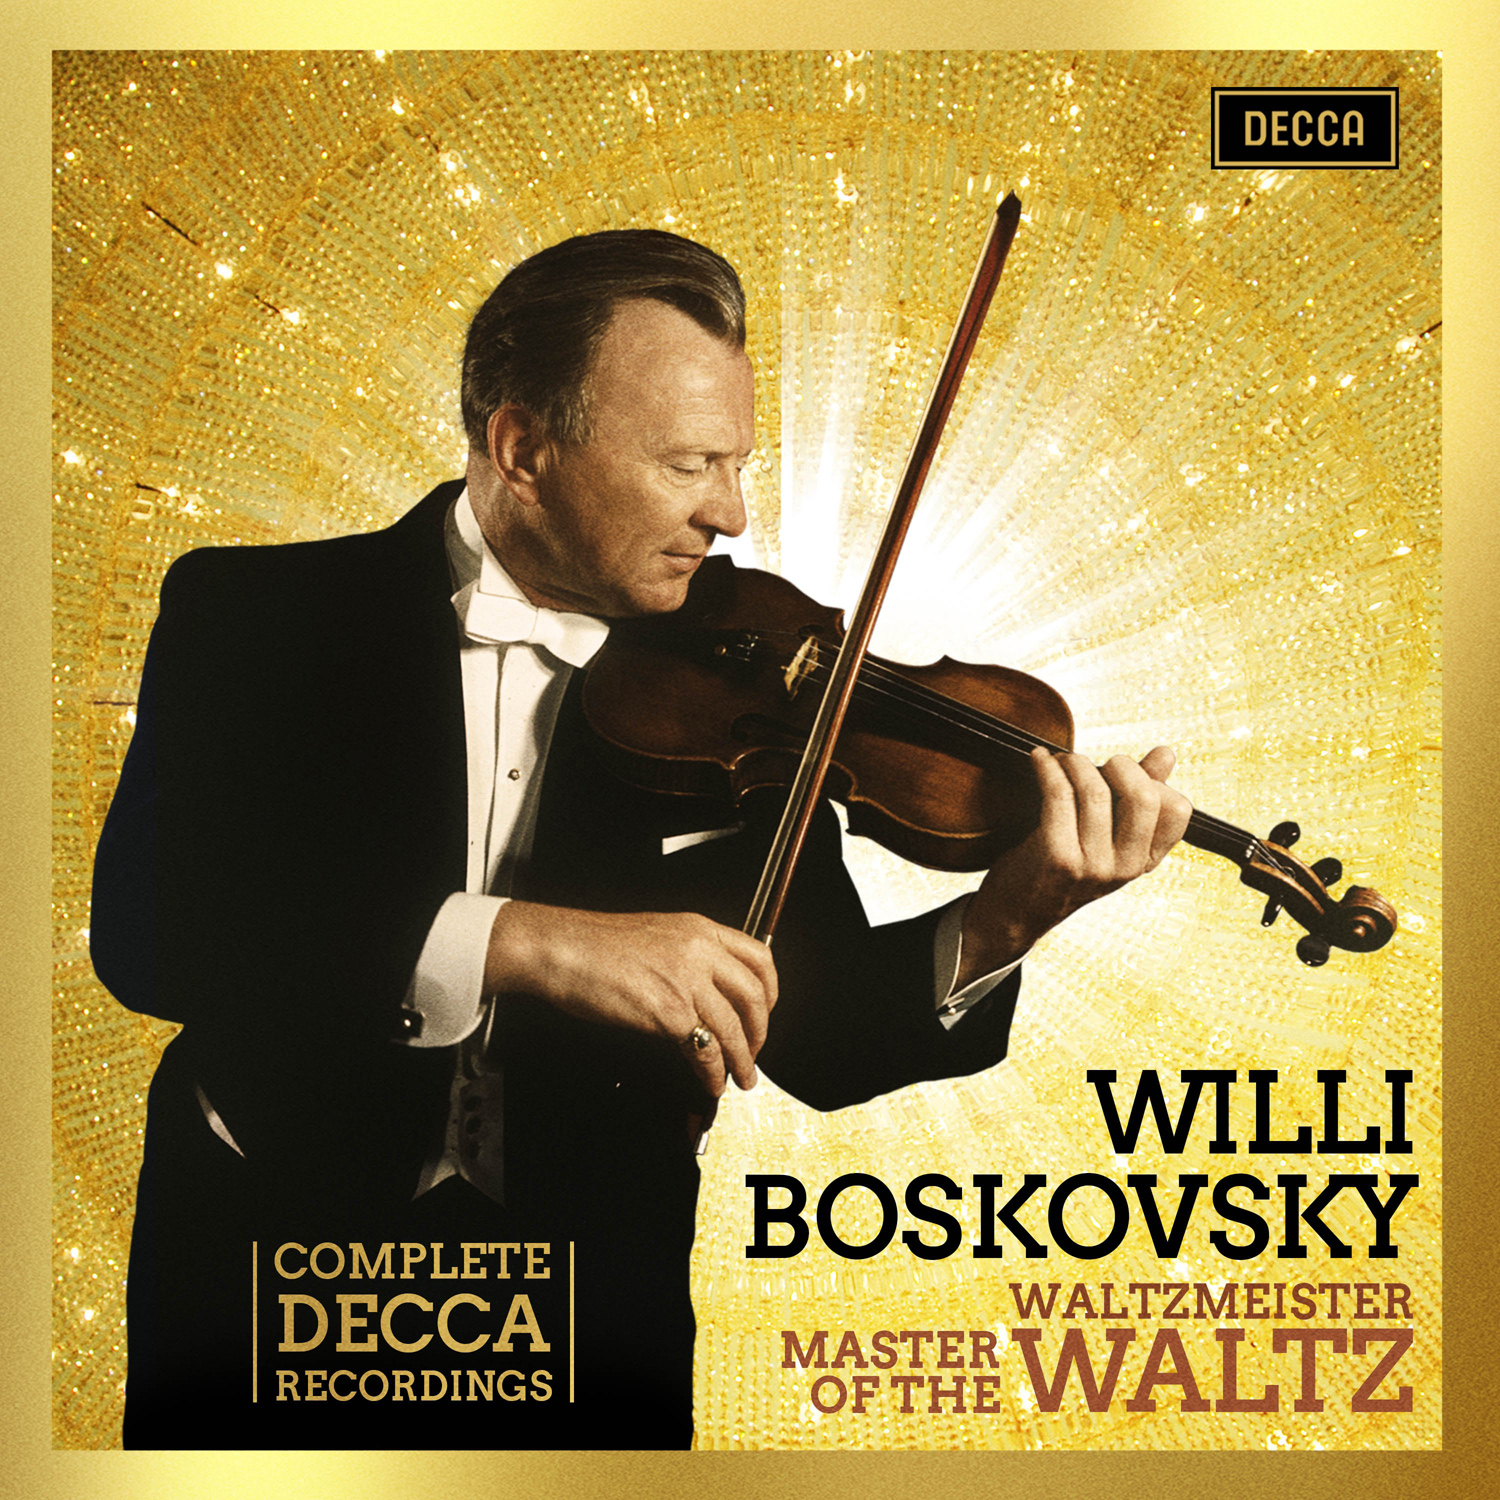 빌리 보스코프스키 데카 레이블 녹음 전집 (Willi Boskovsky - Complete DECCA Recordings) 